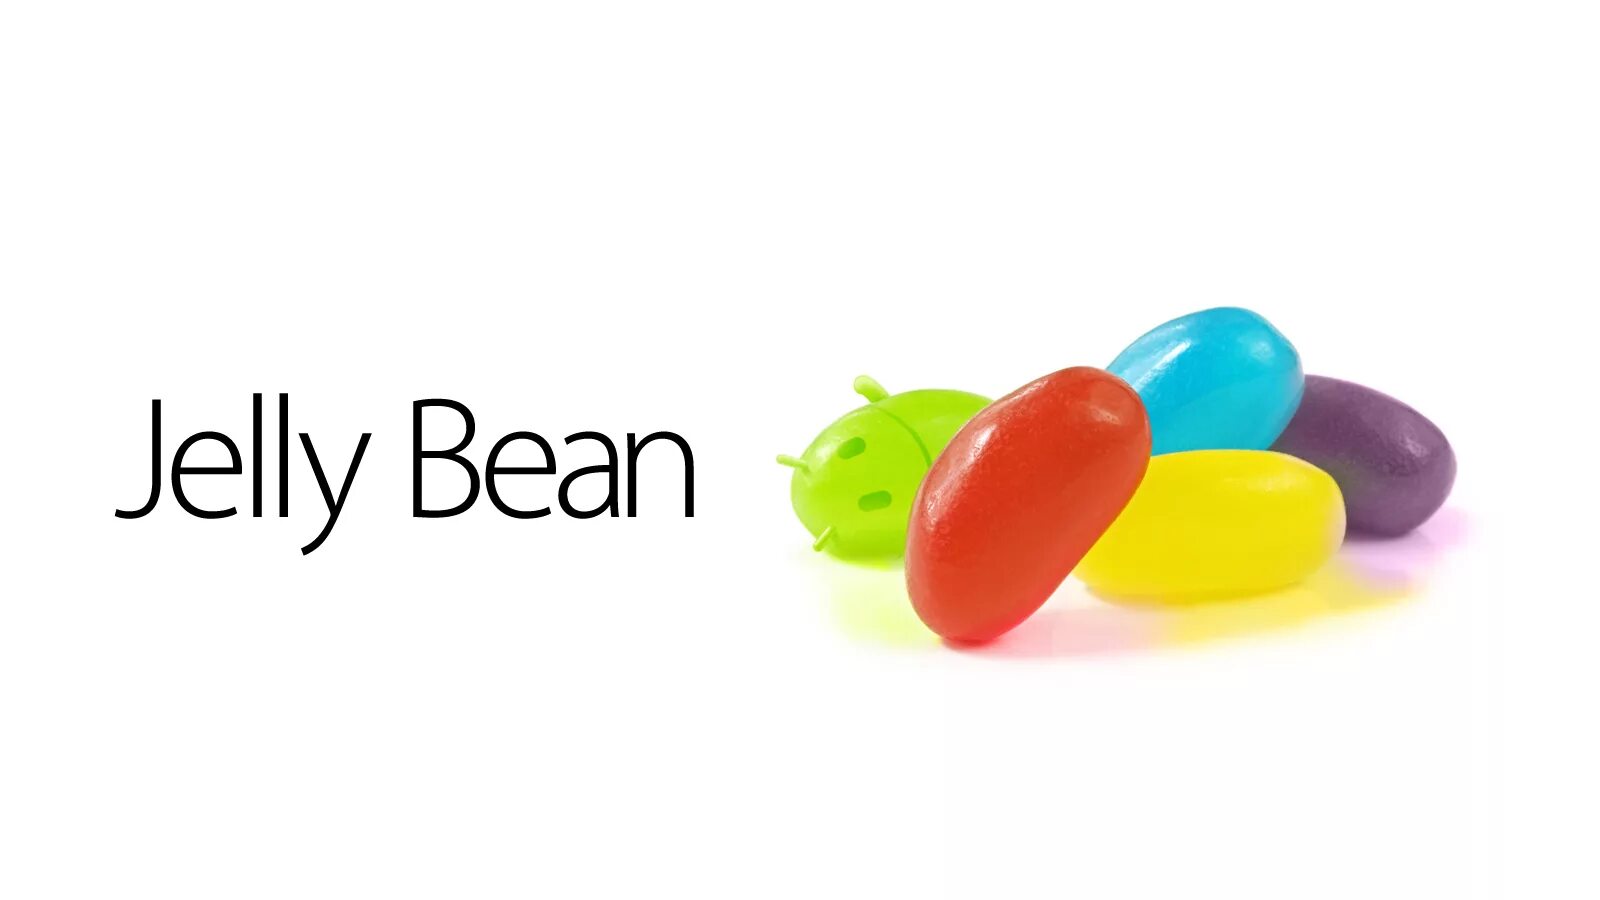 Jelly bean видео. Android Jelly Bean. Jelly Bean эмблема. Android 4.1 Jelly Bean. Android Jelly Bean logo.